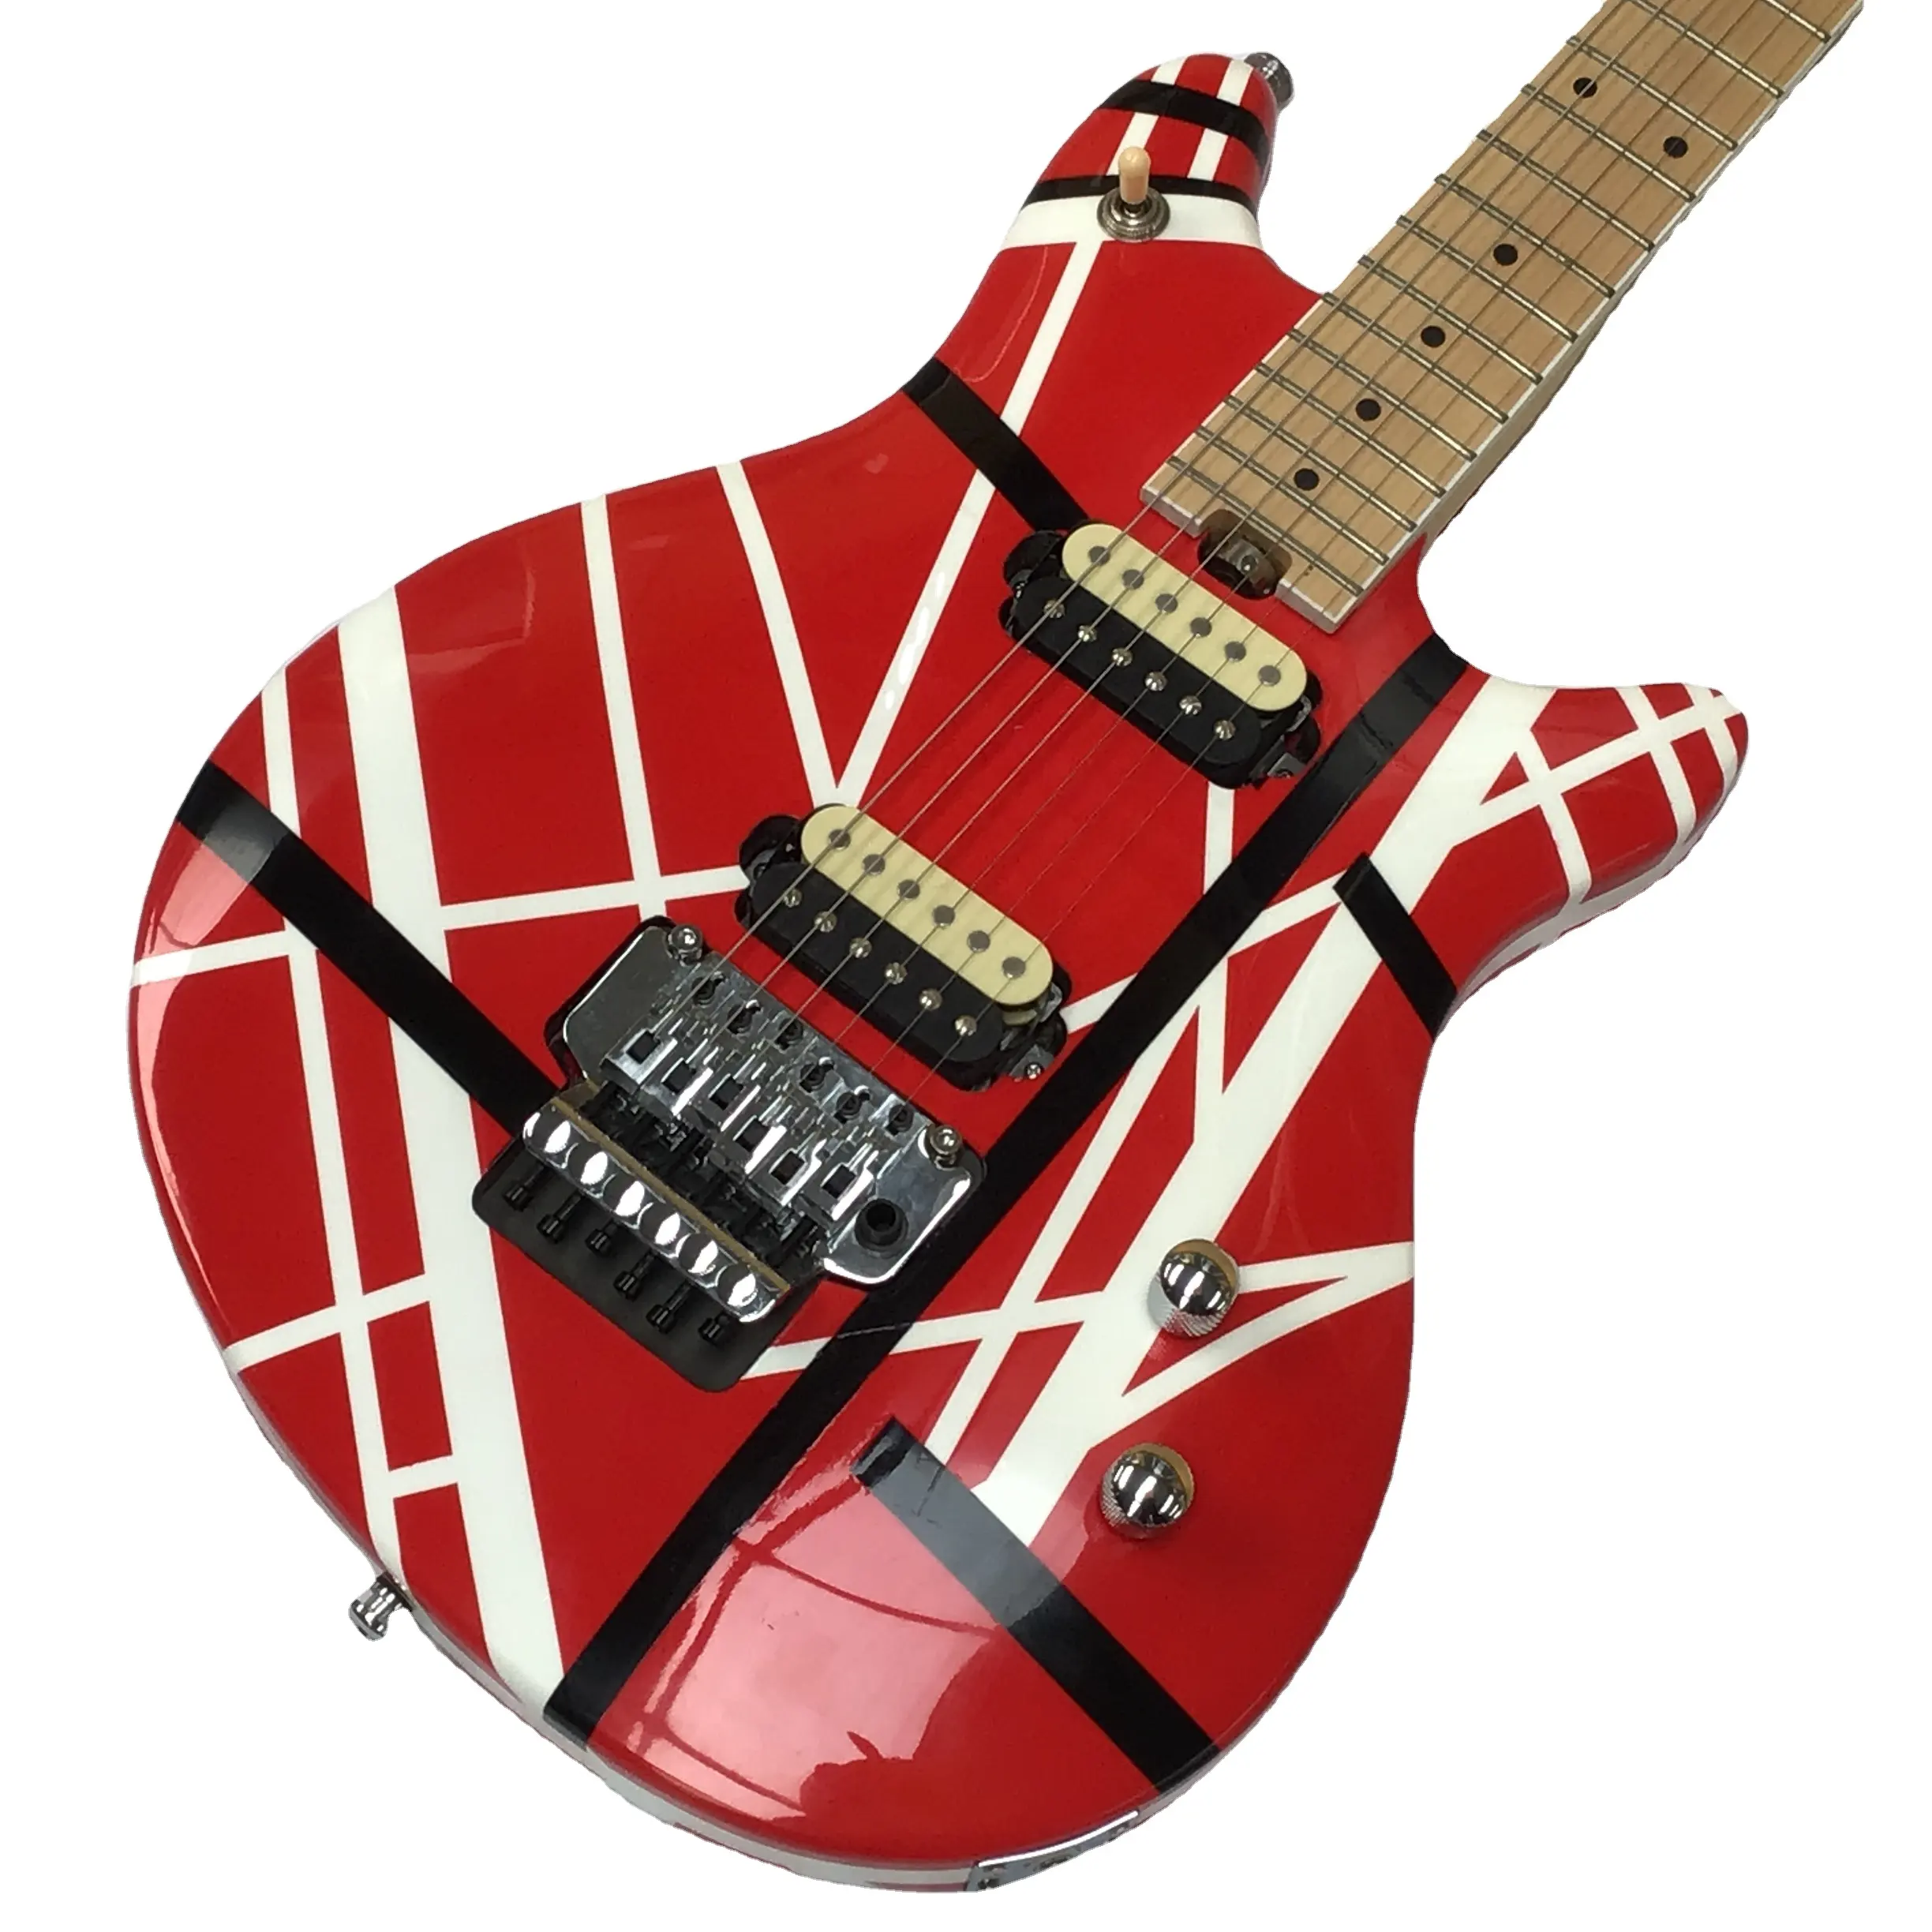 Edwa.d Ed.ieVanHalen chitarra elettrica rossa Franken nera strisce bianche nave libera